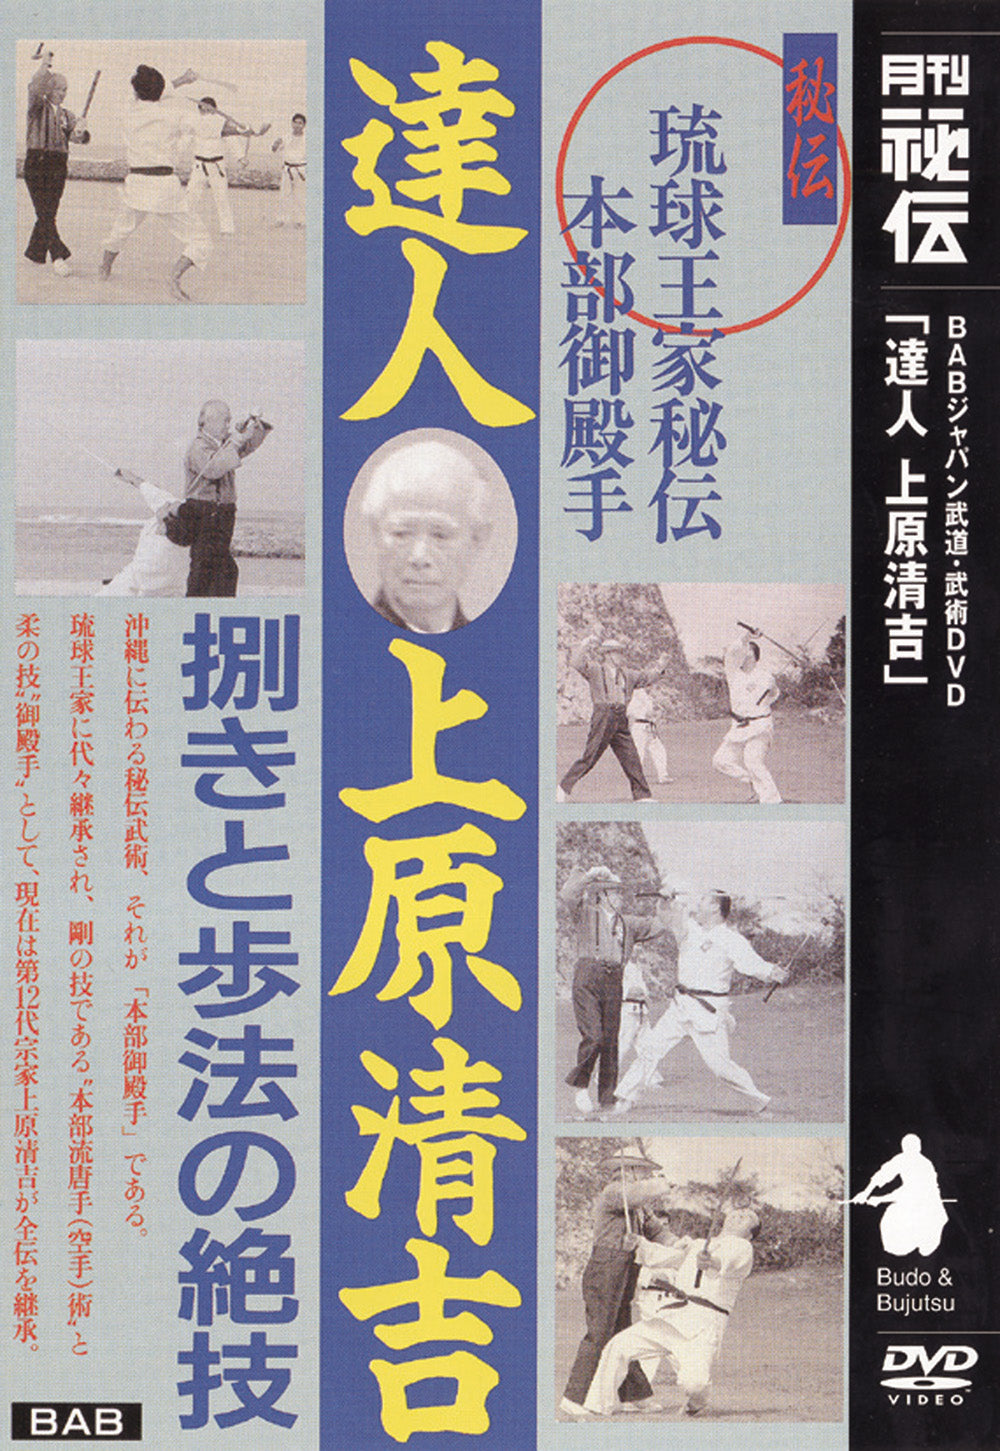 Motobu Gotente with Seikichi Uehara DVD